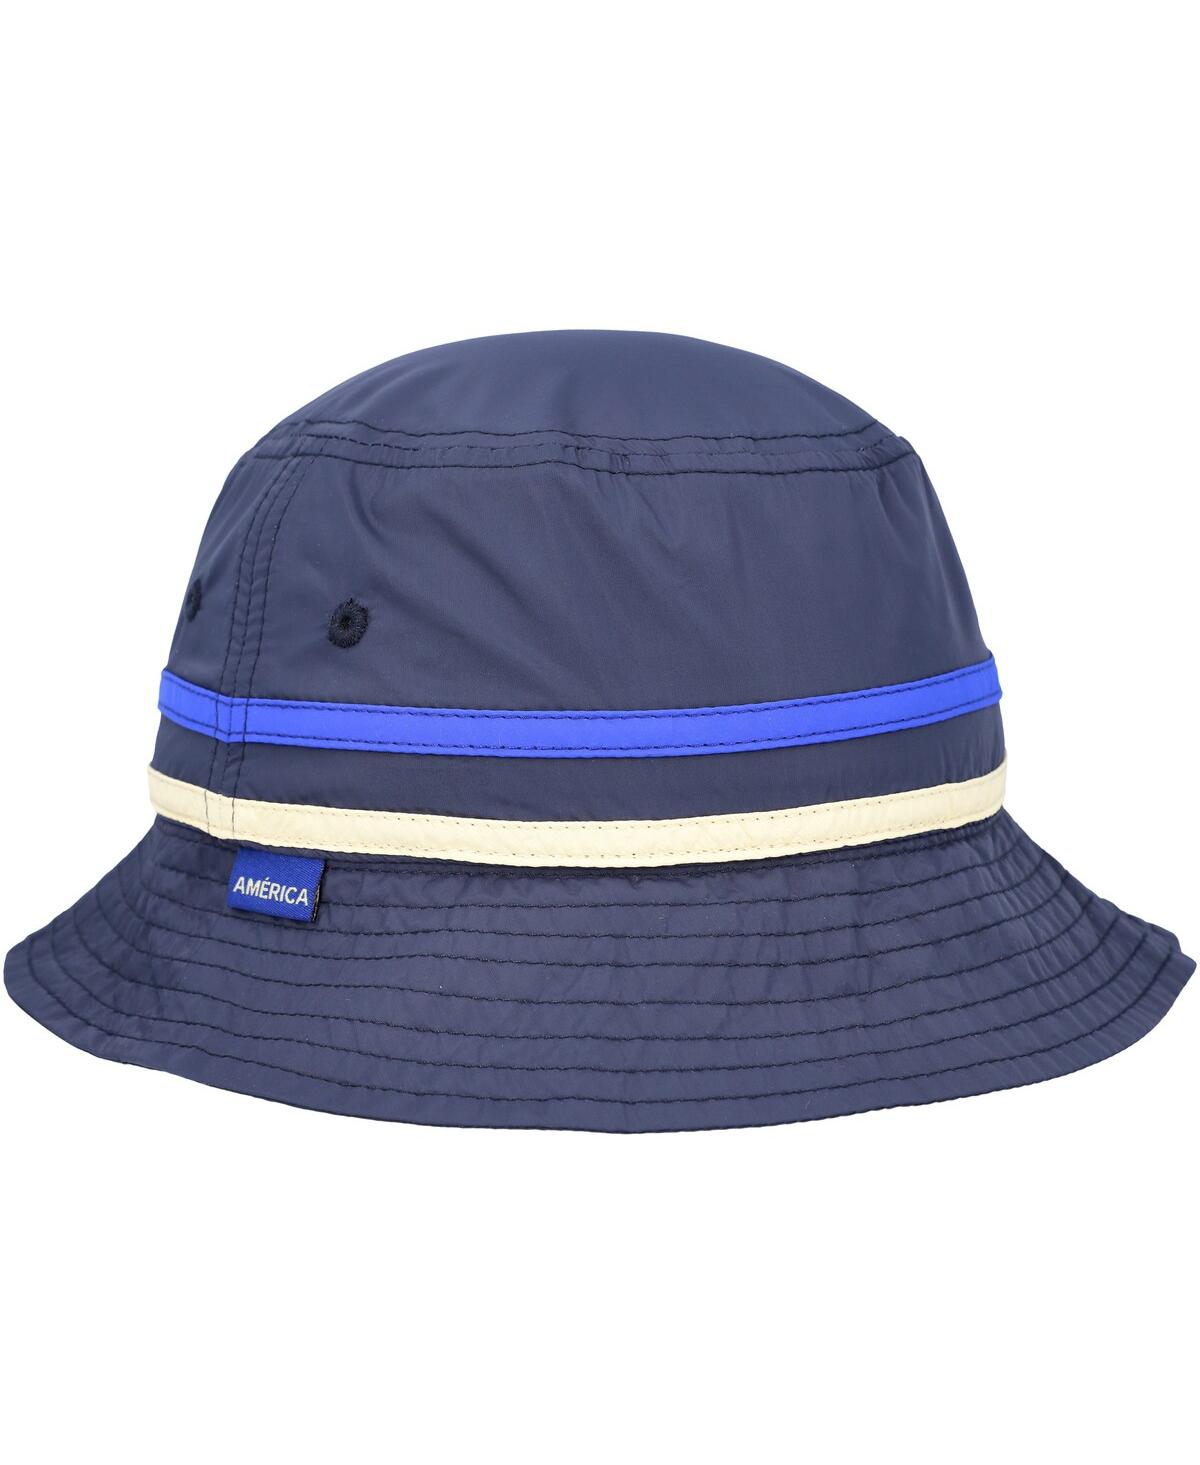 Men's Navy Club America Oasis Bucket Hat - Navy